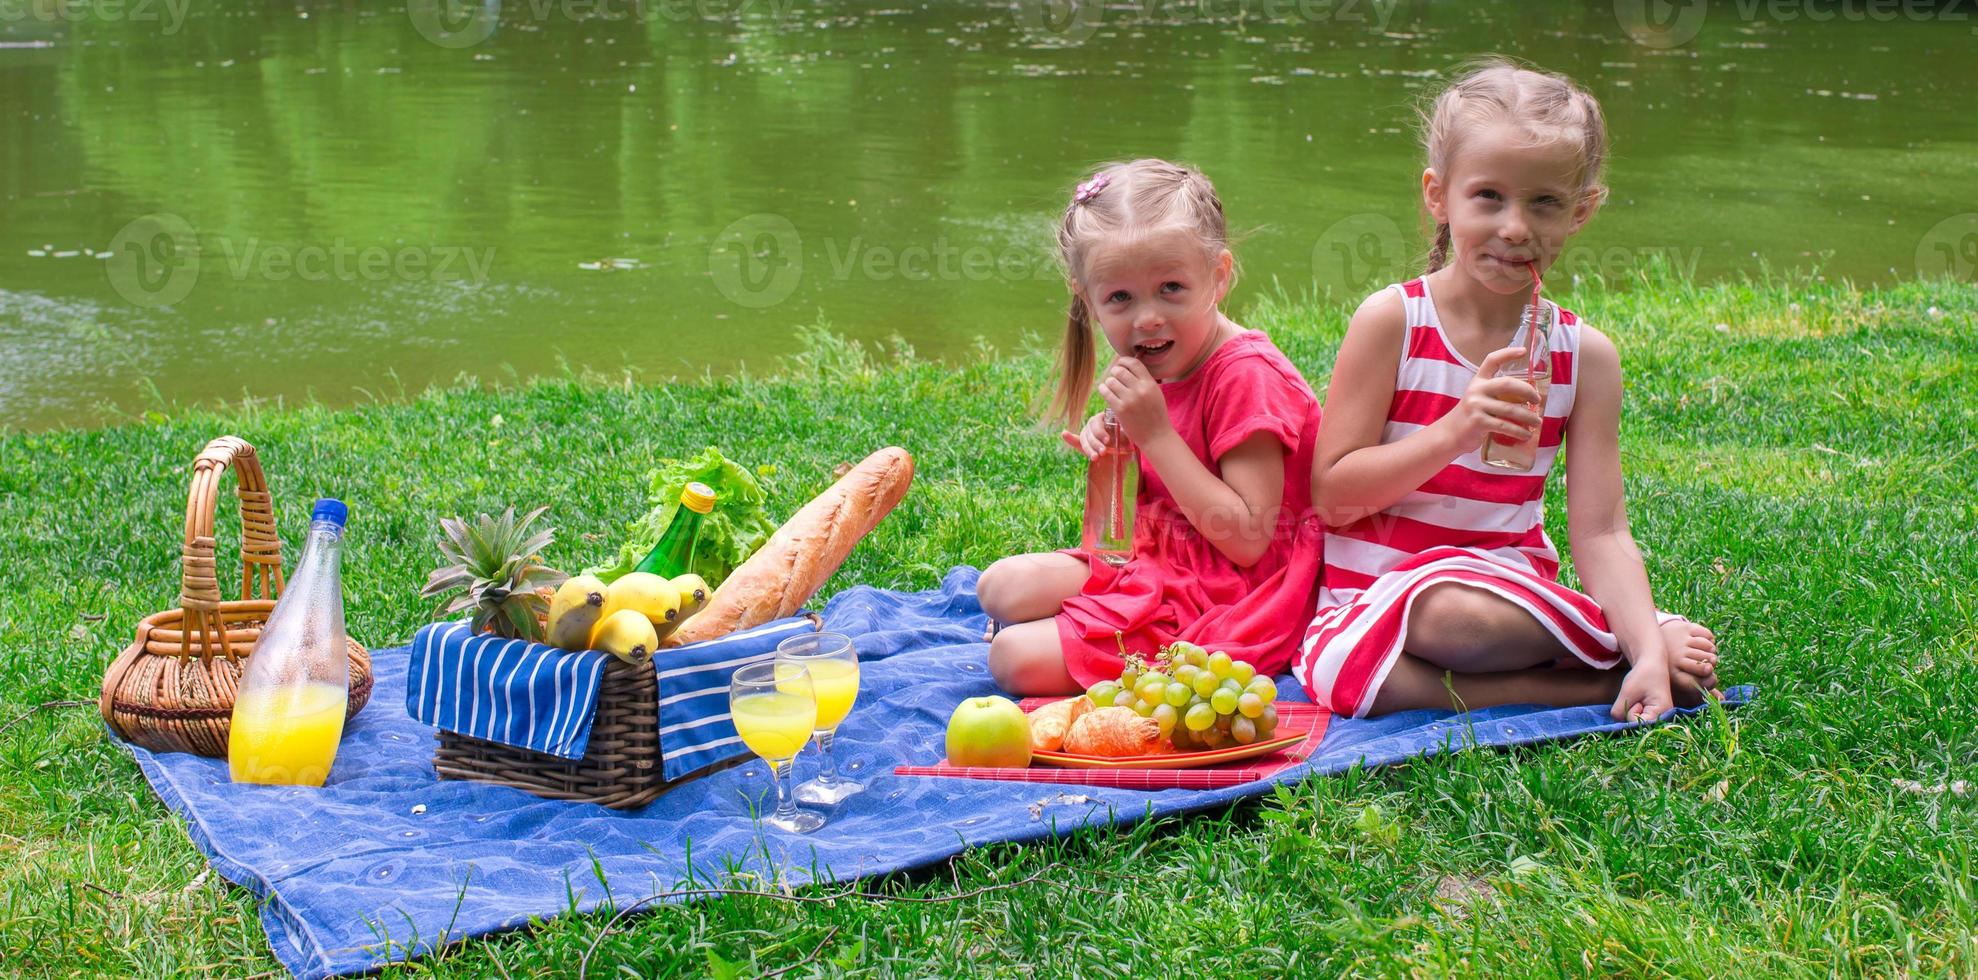 süße kleine mädchen picknicken im freien foto